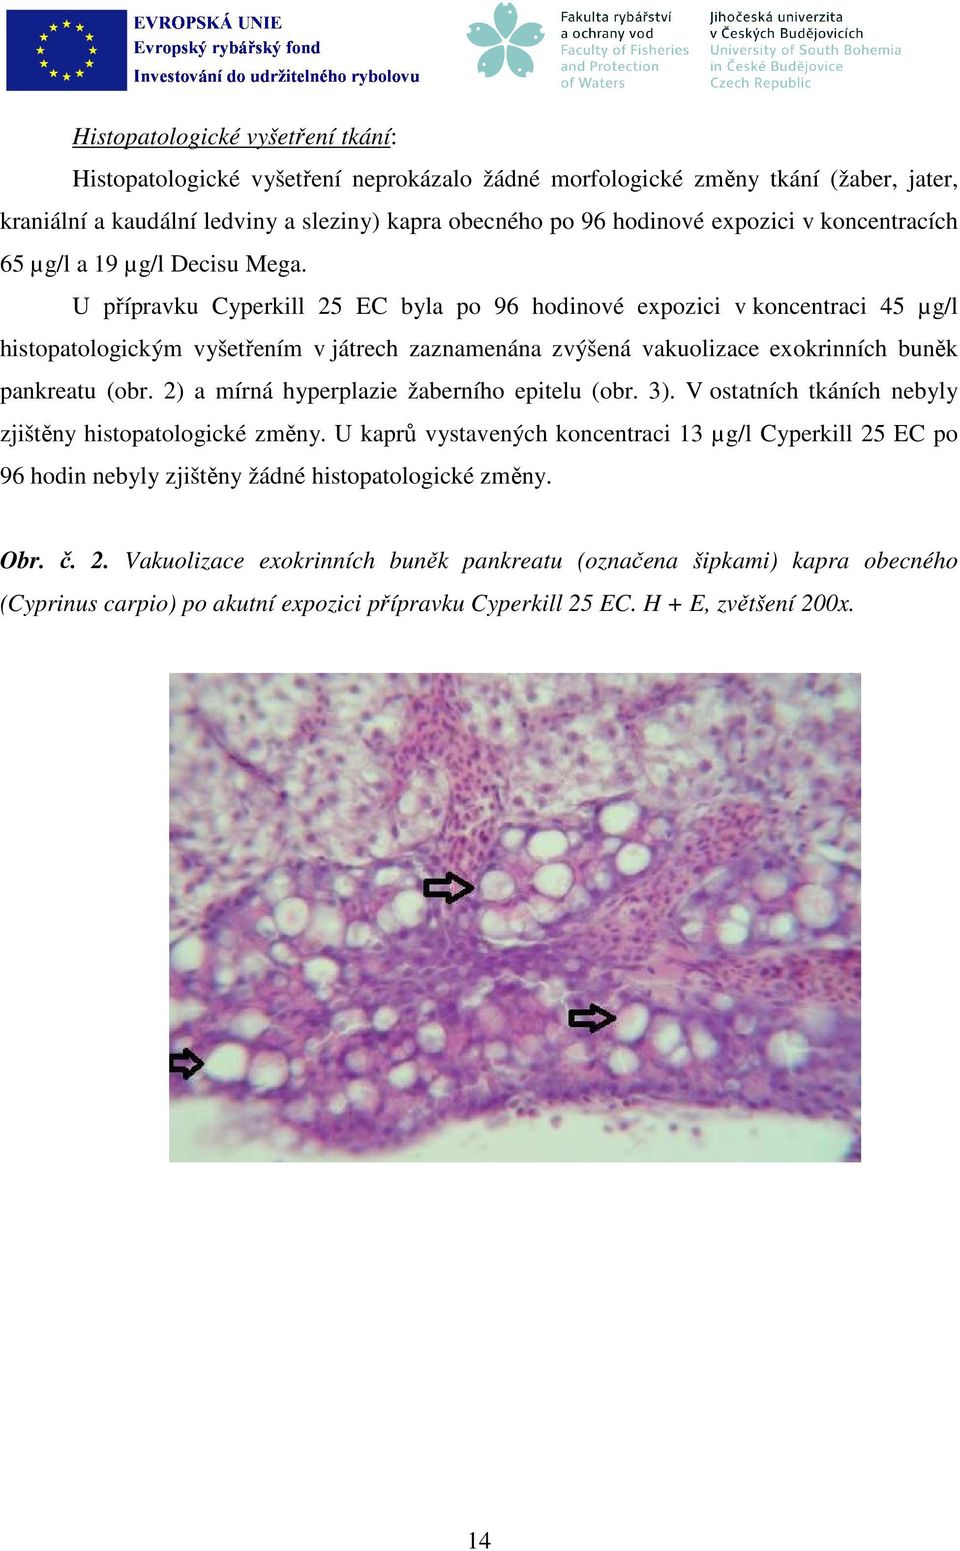 U přípravku Cyperkill 25 EC byla po 96 hodinové expozici v koncentraci 45 µg/l histopatologickým vyšetřením v játrech zaznamenána zvýšená vakuolizace exokrinních buněk pankreatu (obr.